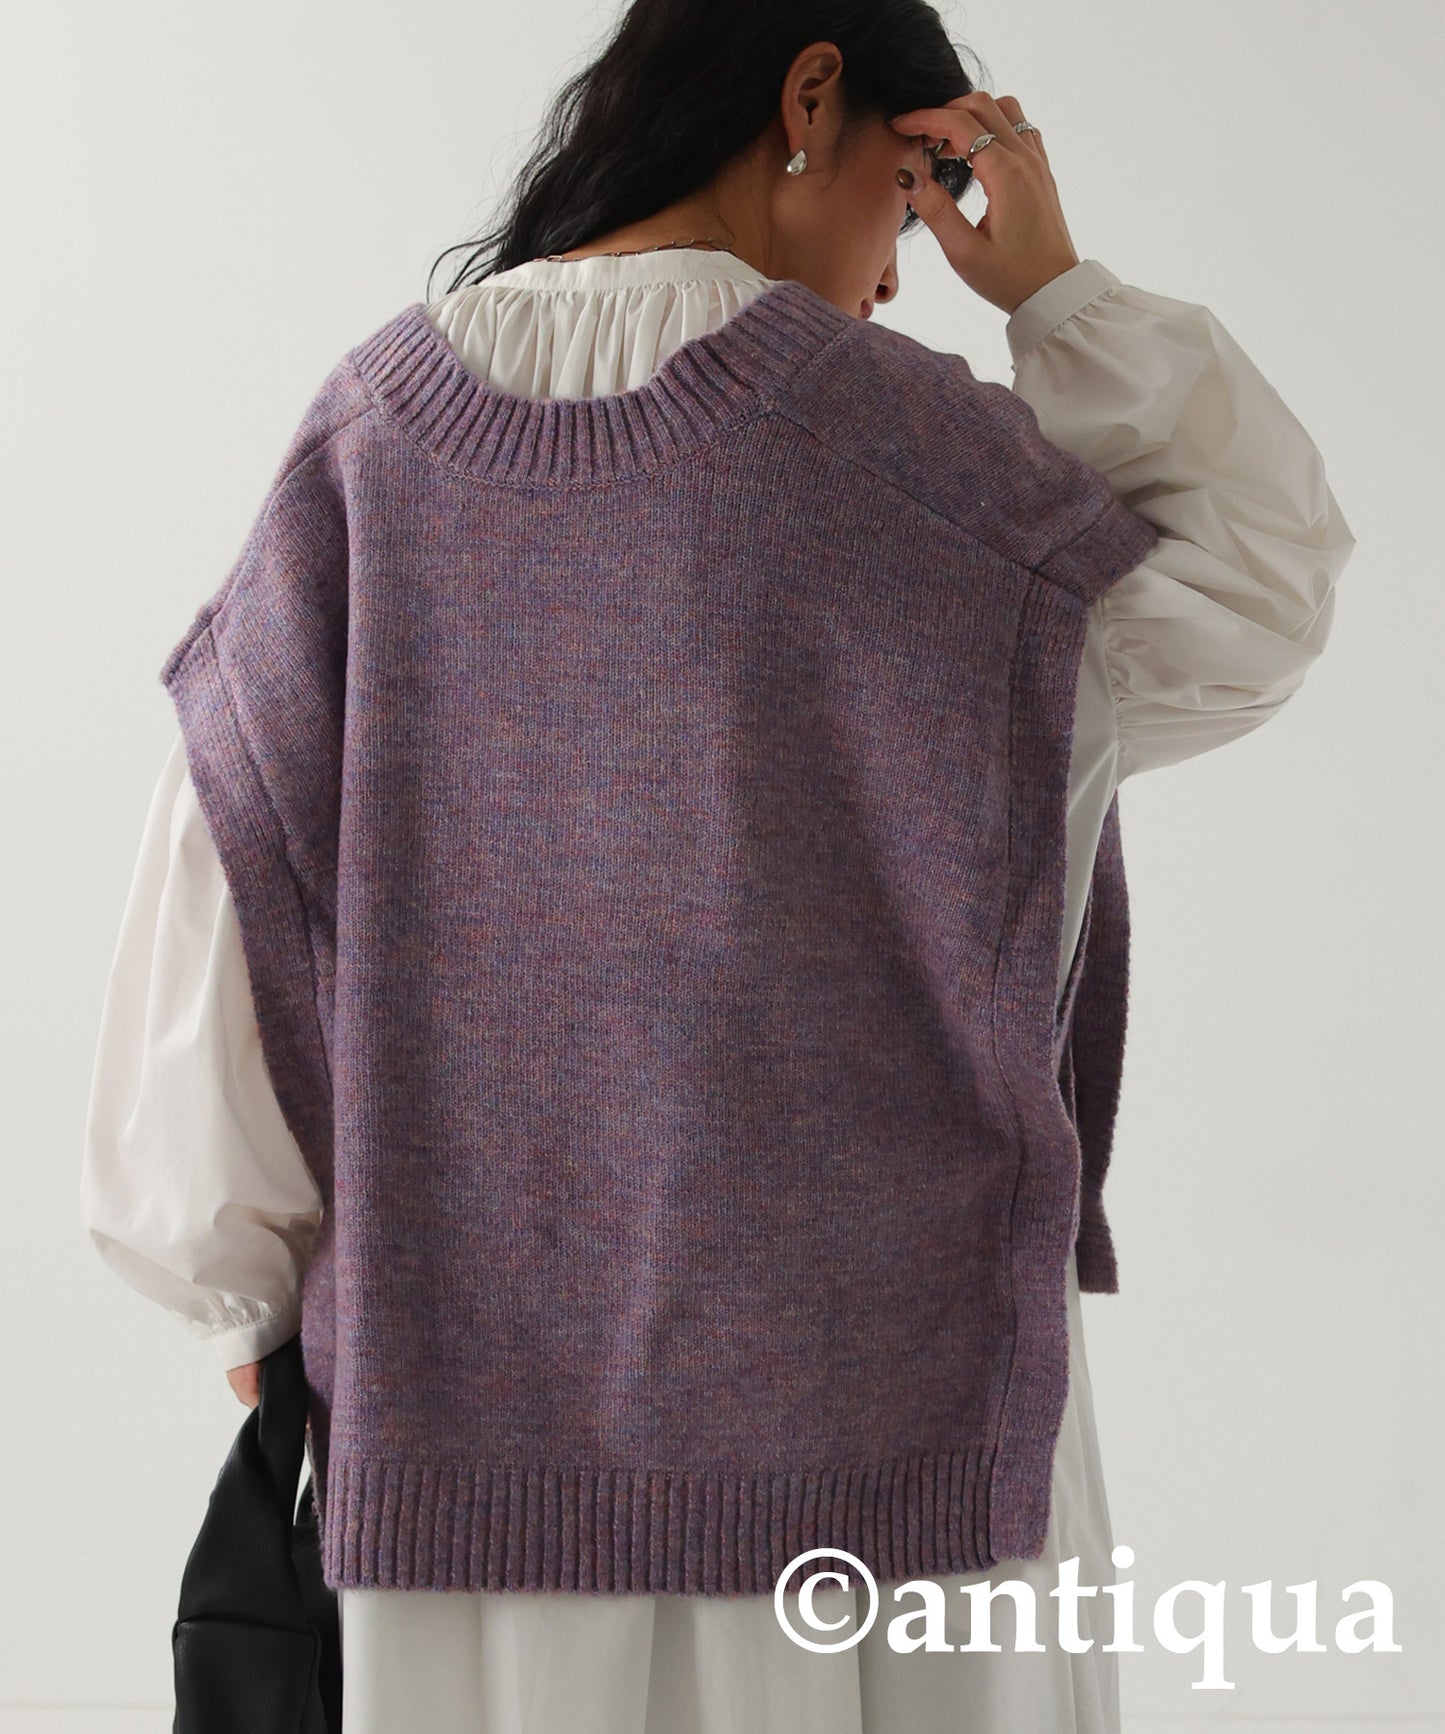 V-neck knit Vest with side belt Ladies